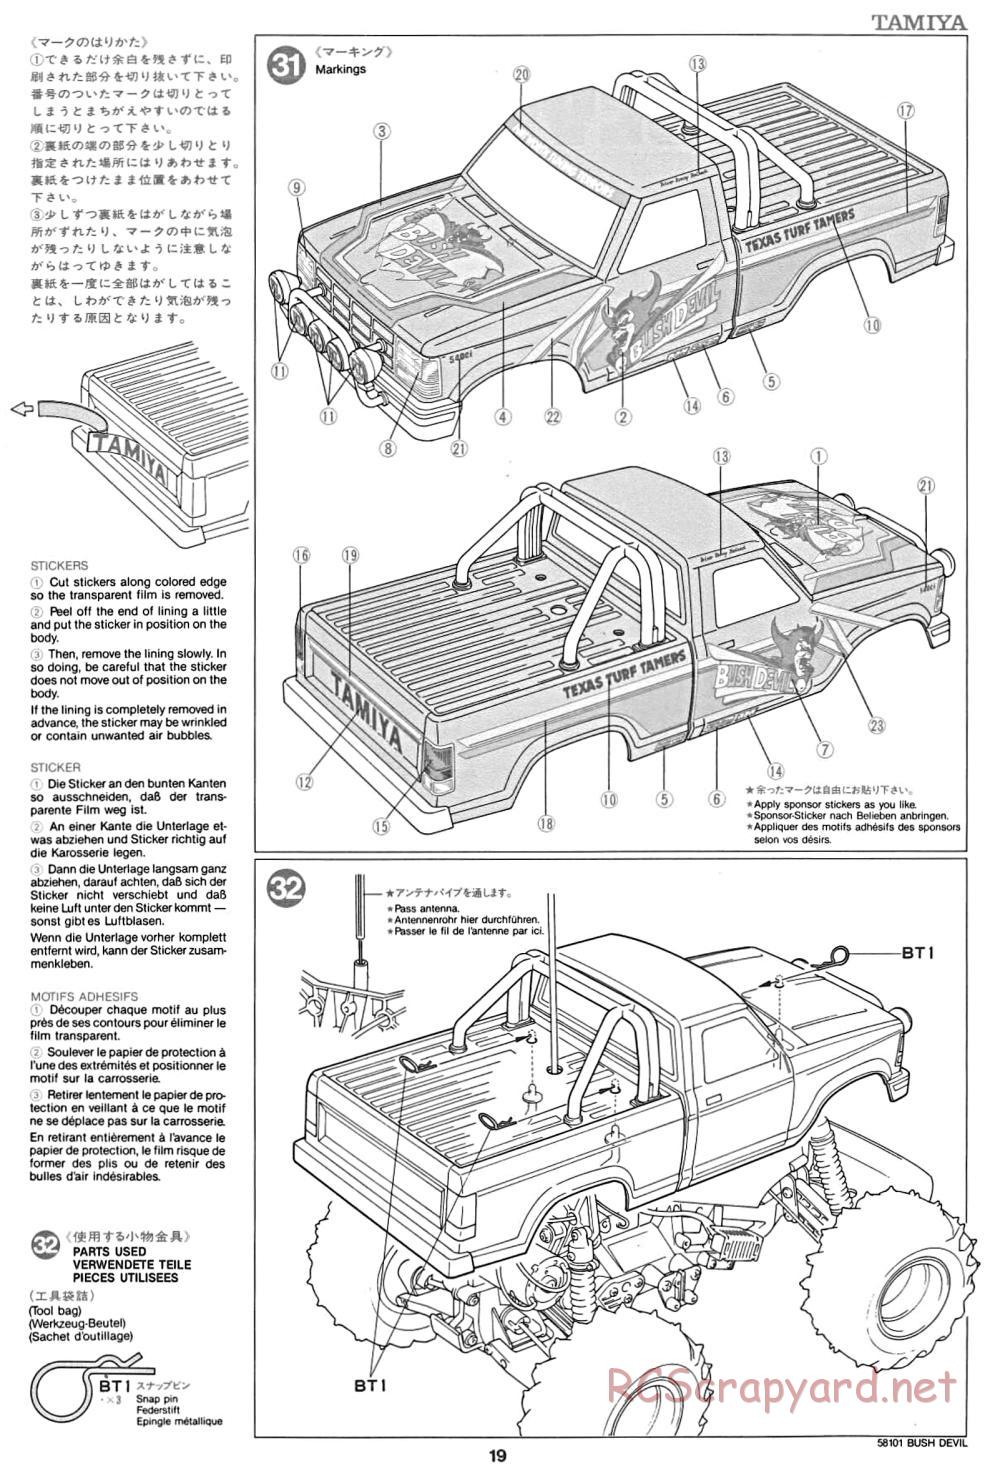 Tamiya - Bush Devil Chassis - Manual - Page 19